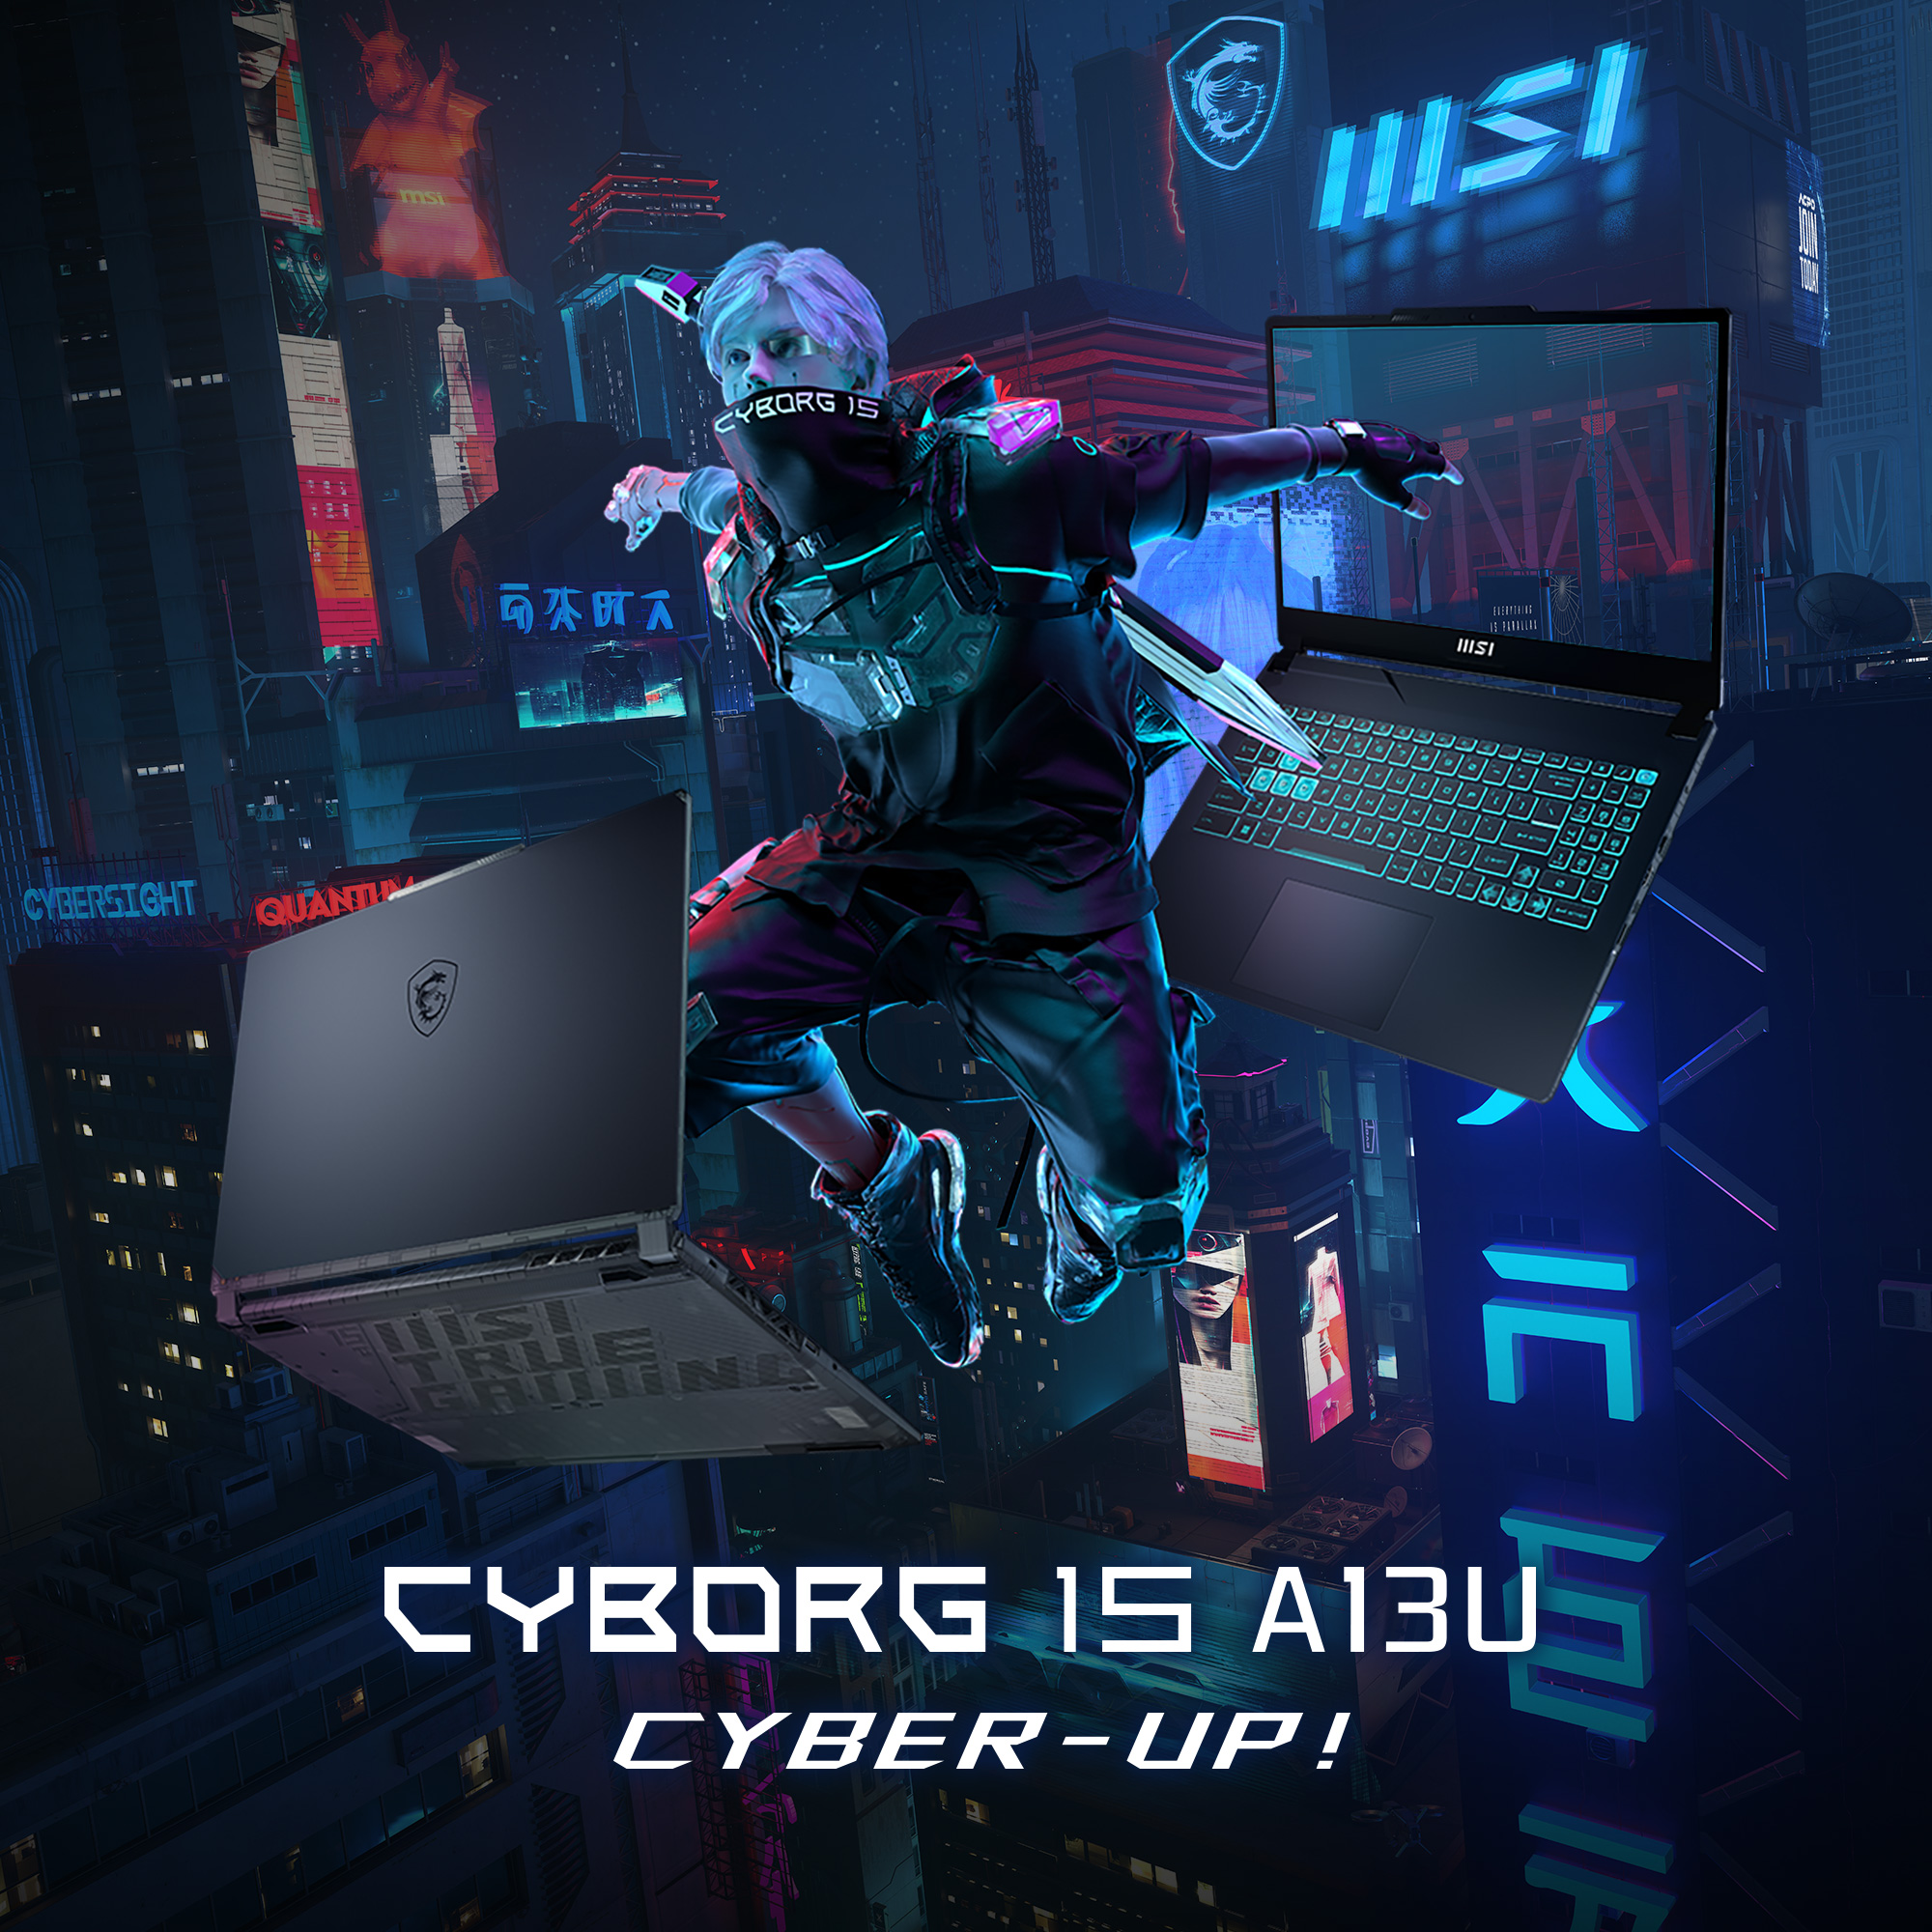 MSI Cyborg 15 A13VE-1005 - CYBER-UP!